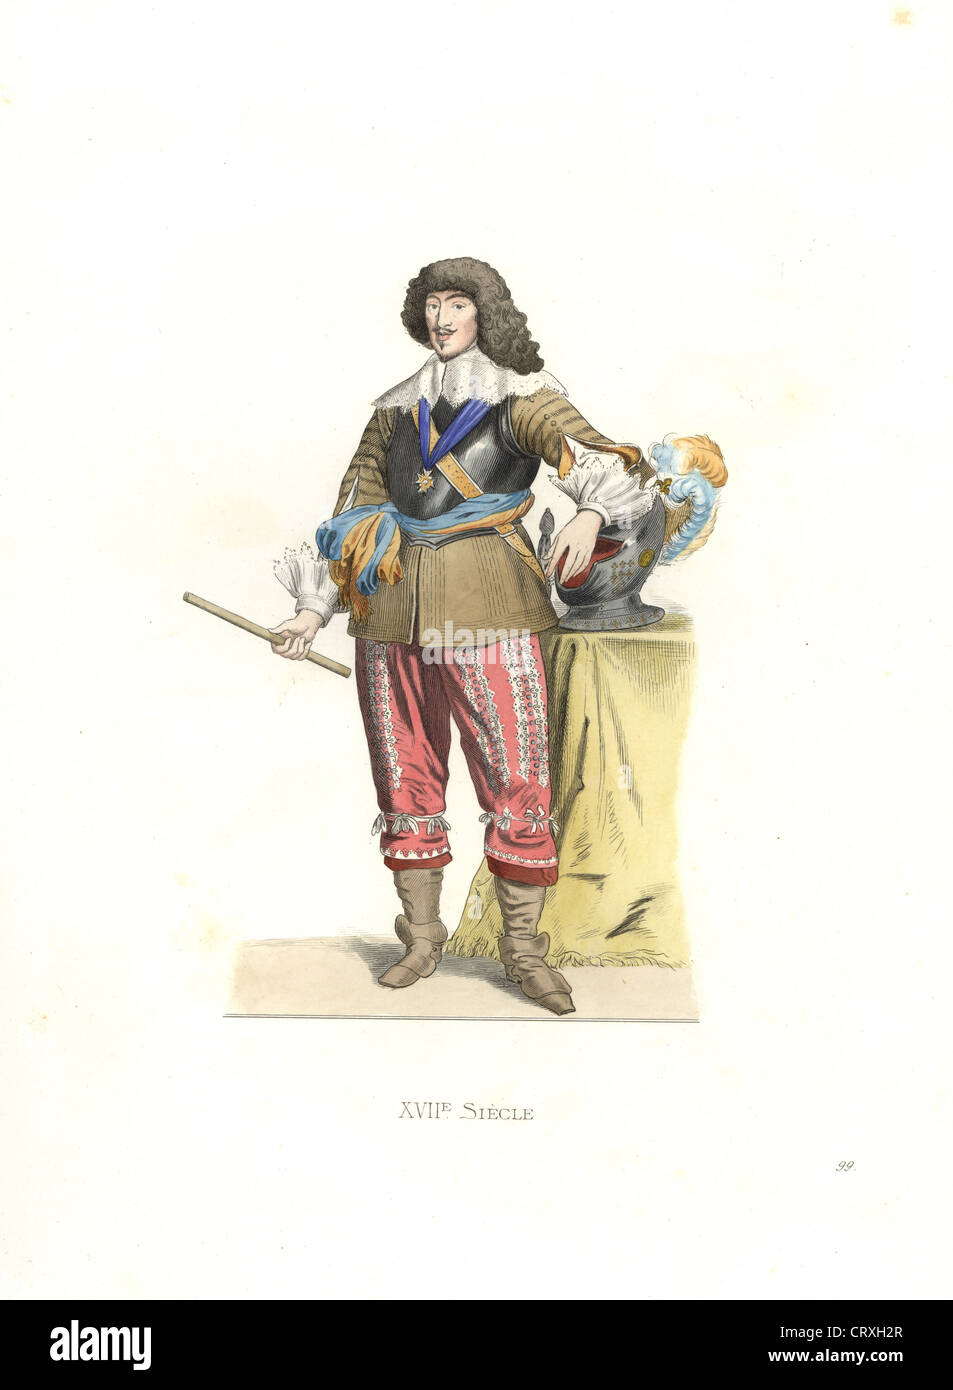 Gaston Jean Baptiste de France, duke of Orleans, France, 17th century. Stock Photo